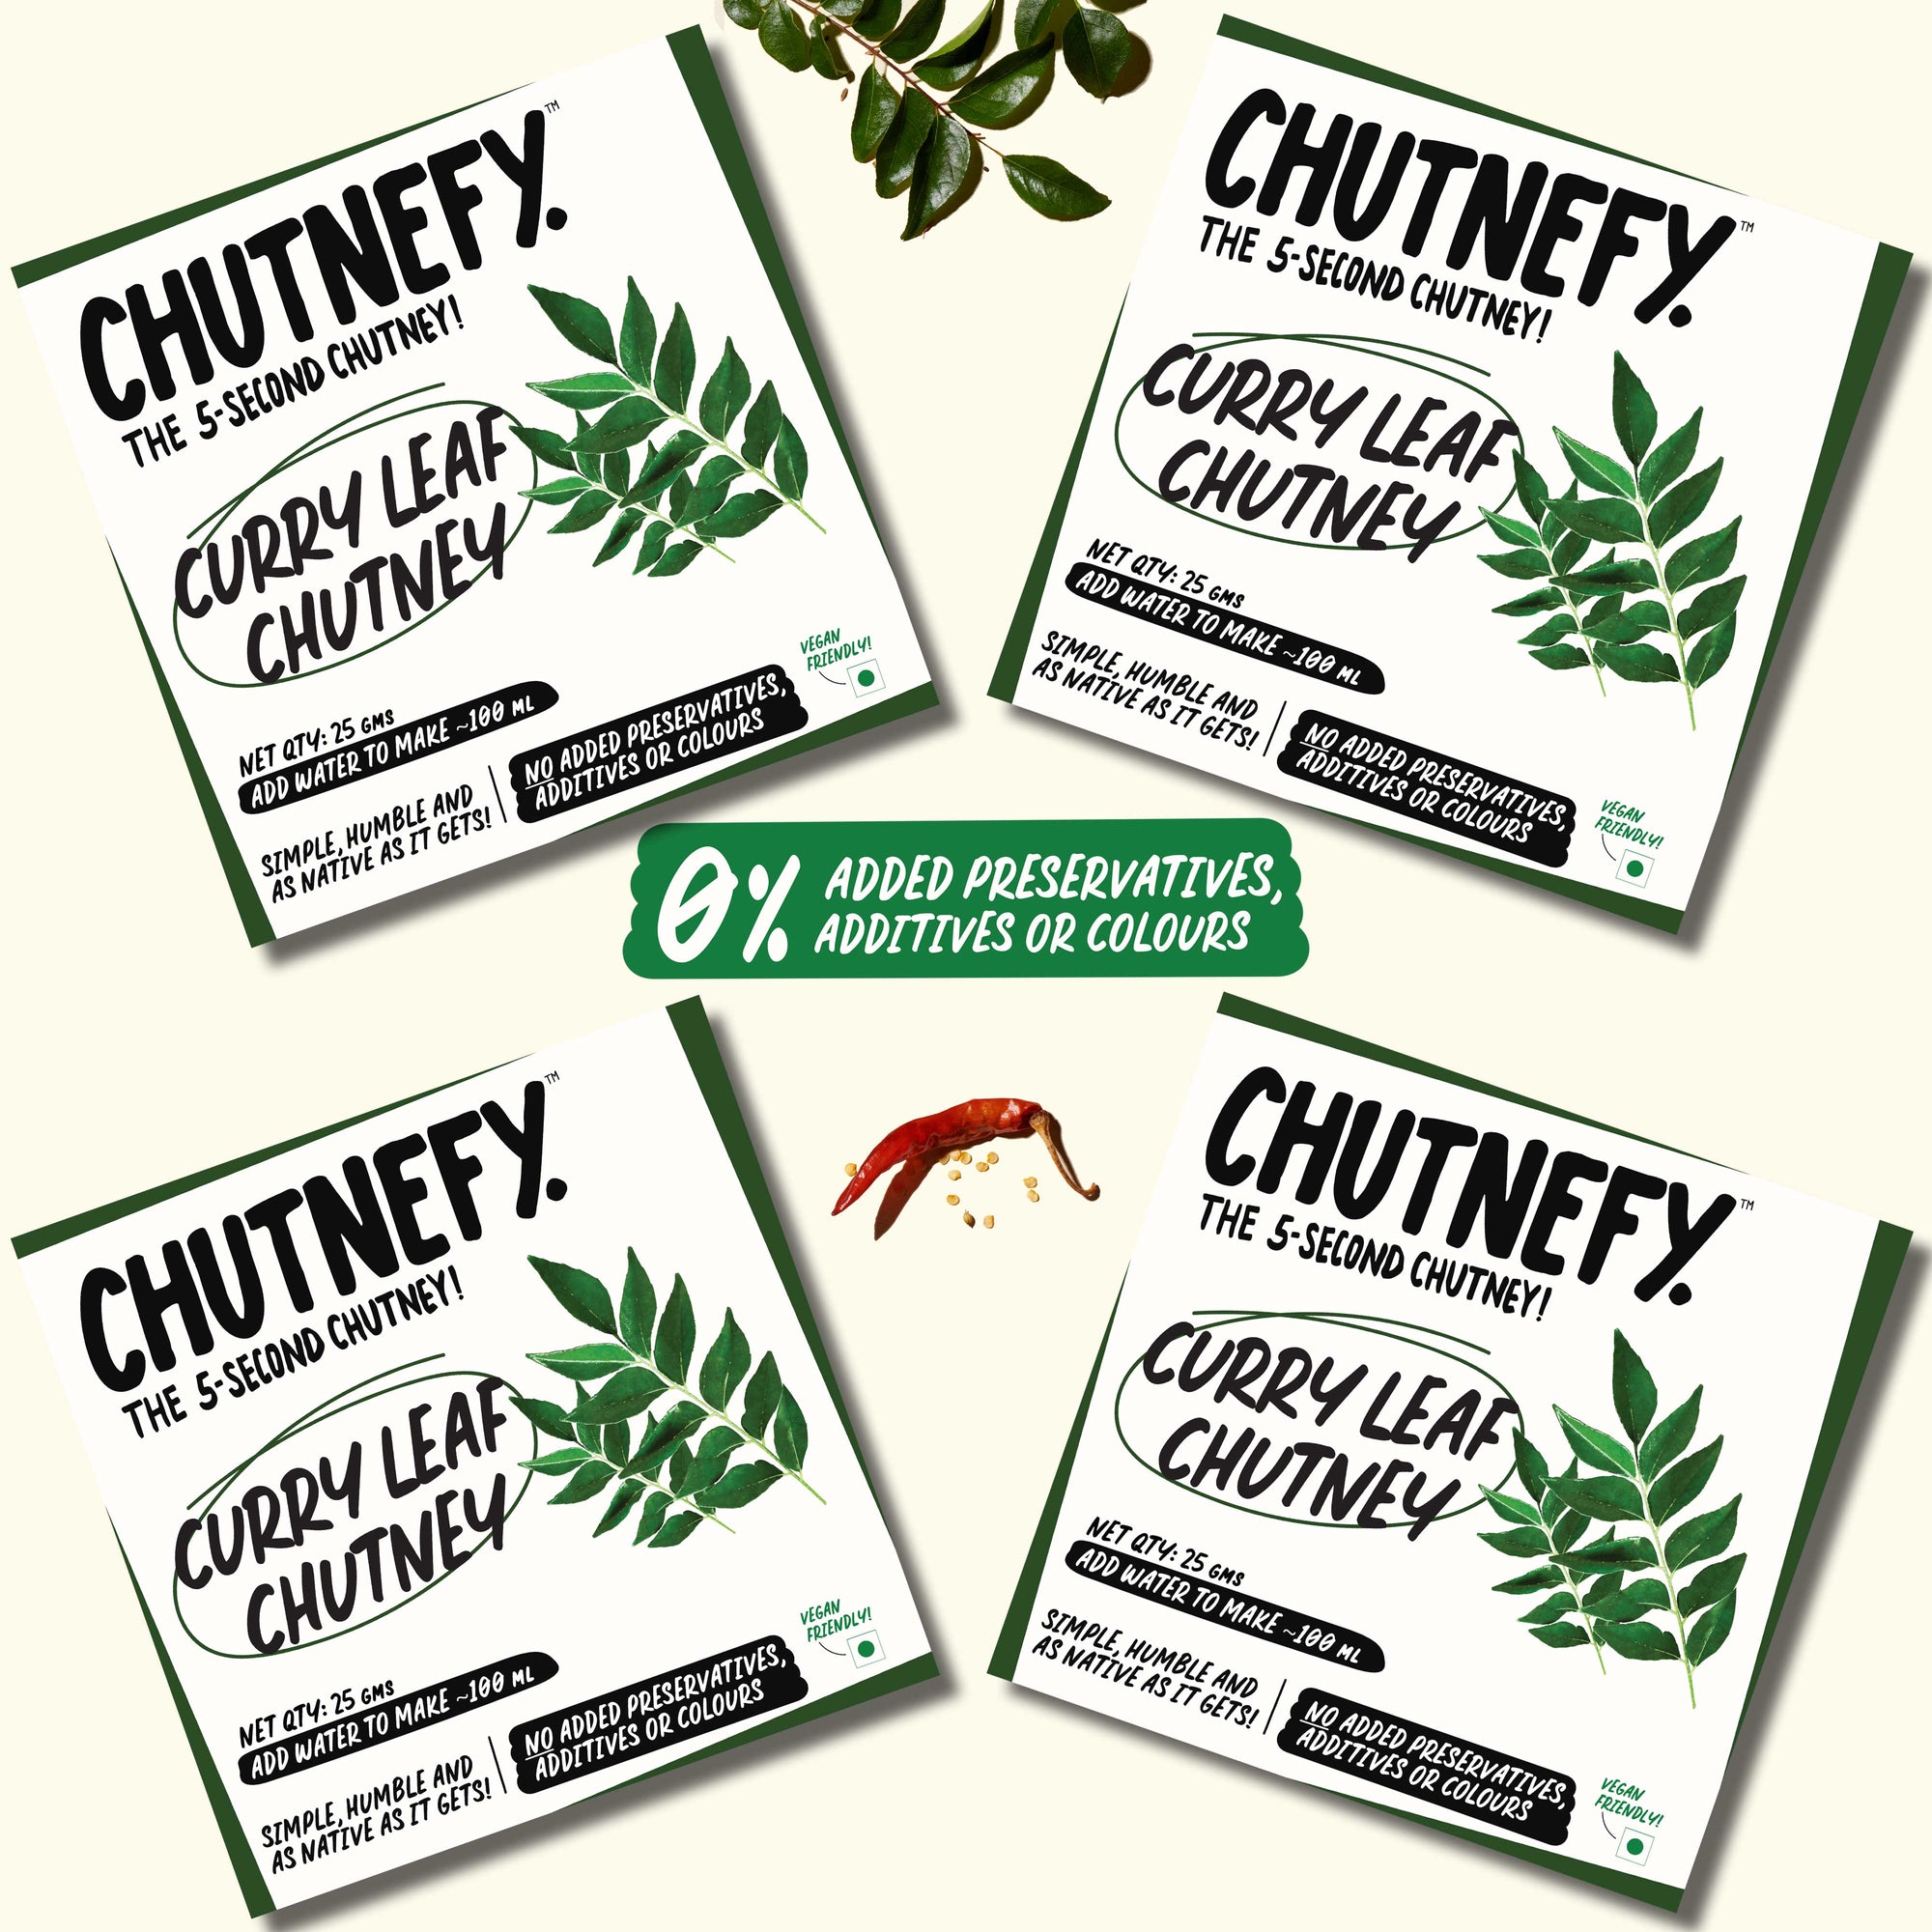 Curry Leaf Chutney | Buy 2 Get 2 Free | 25g * 4